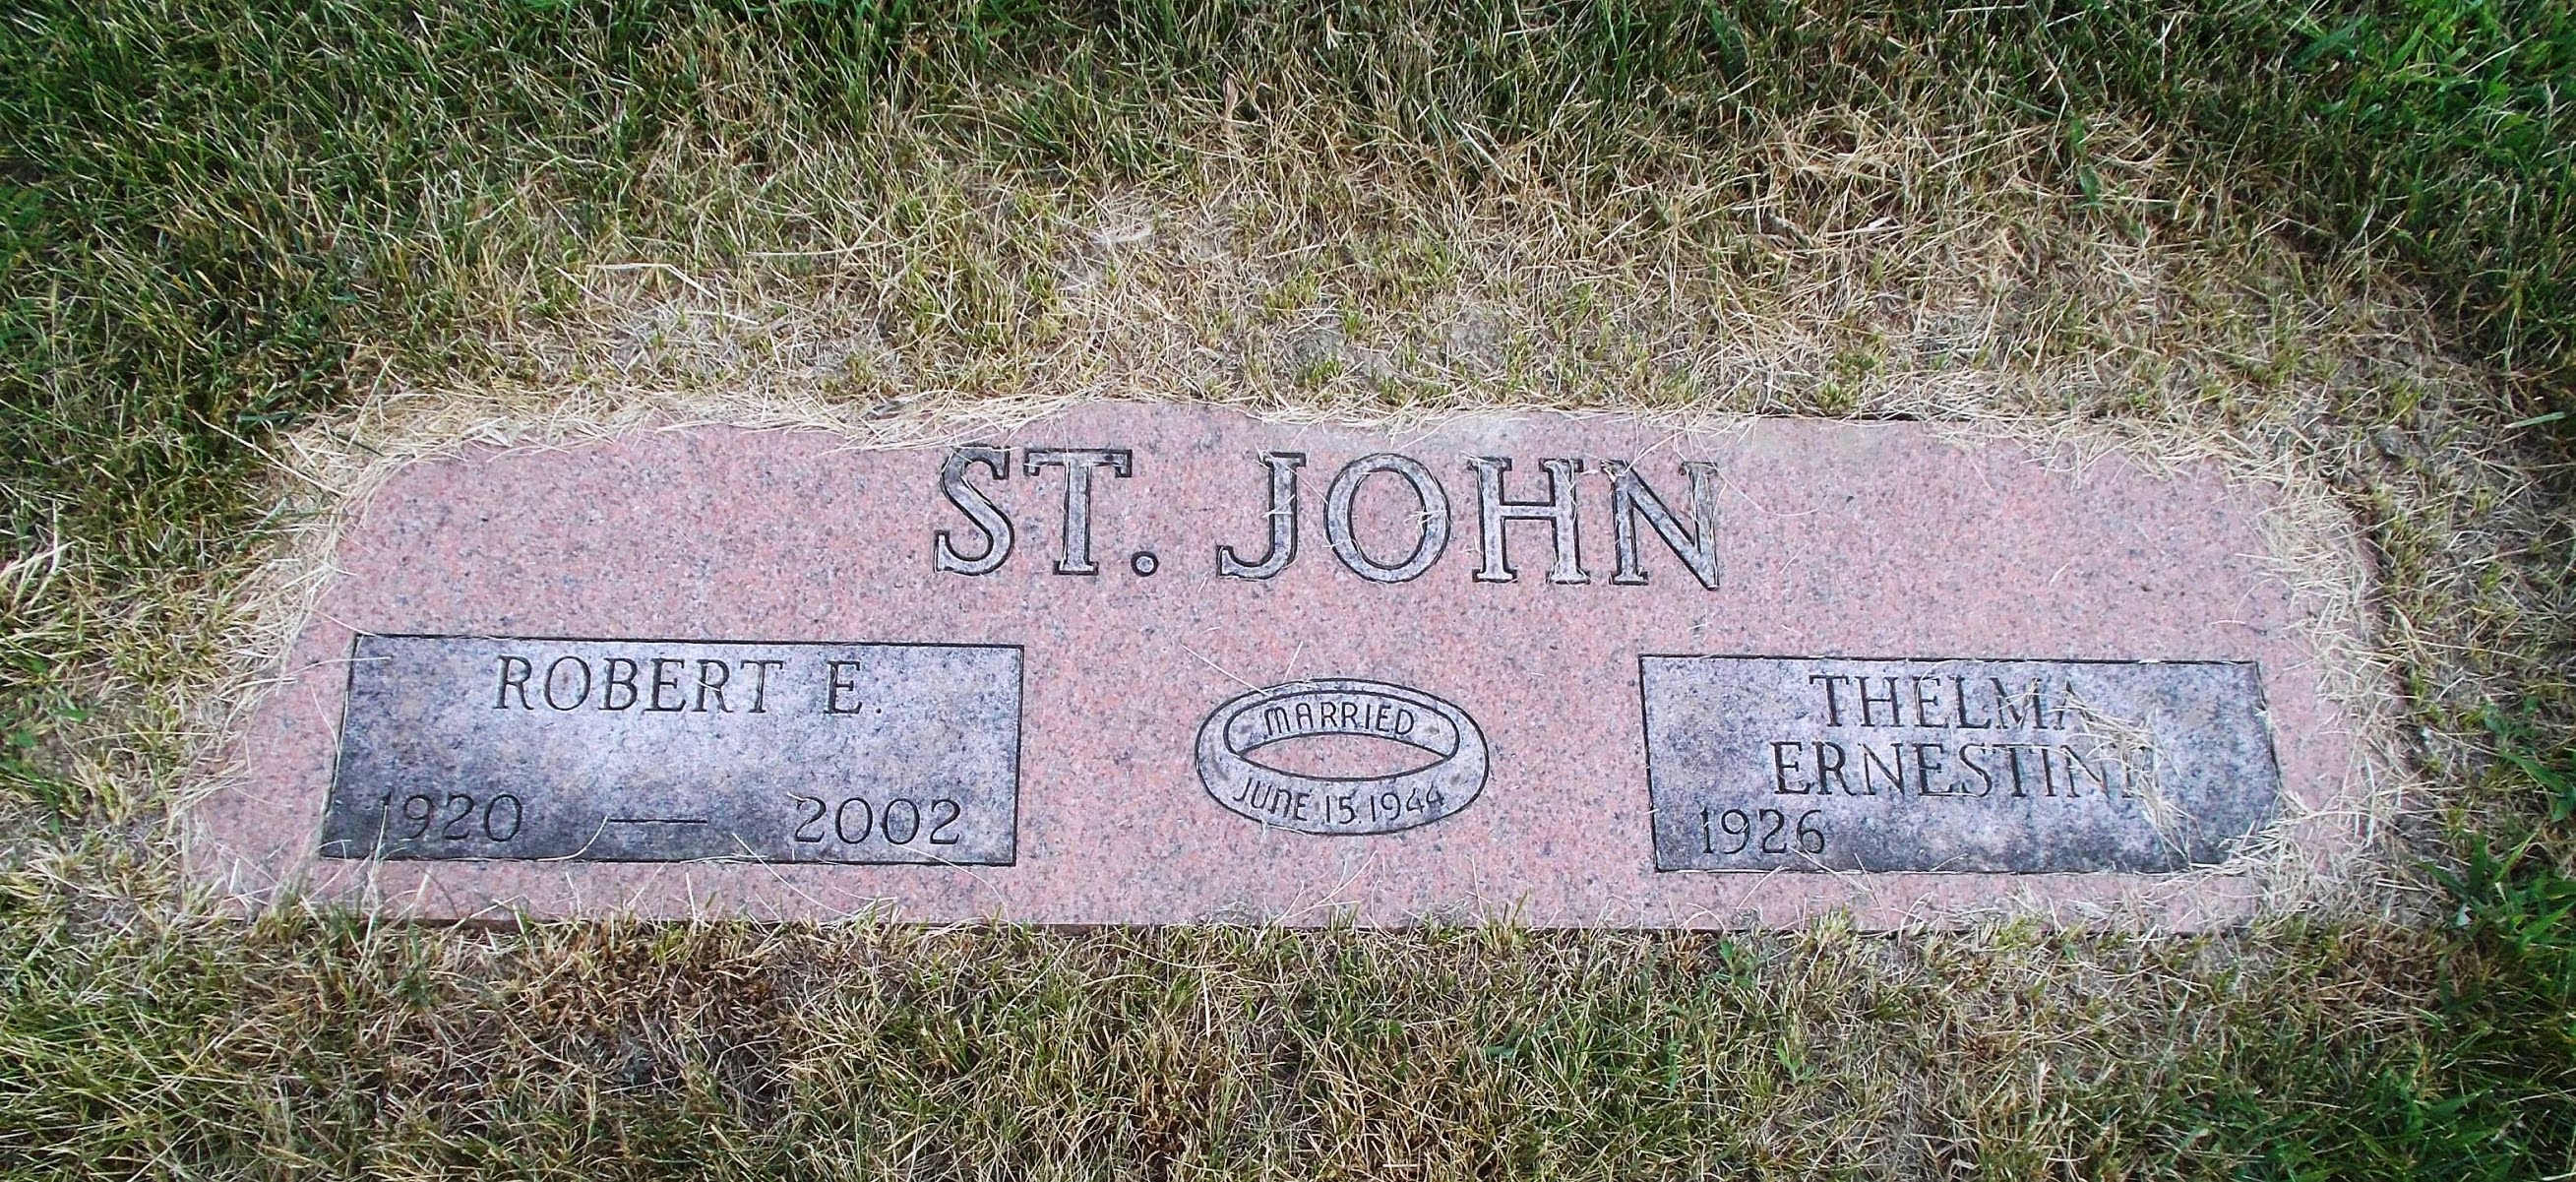 Robert E St John